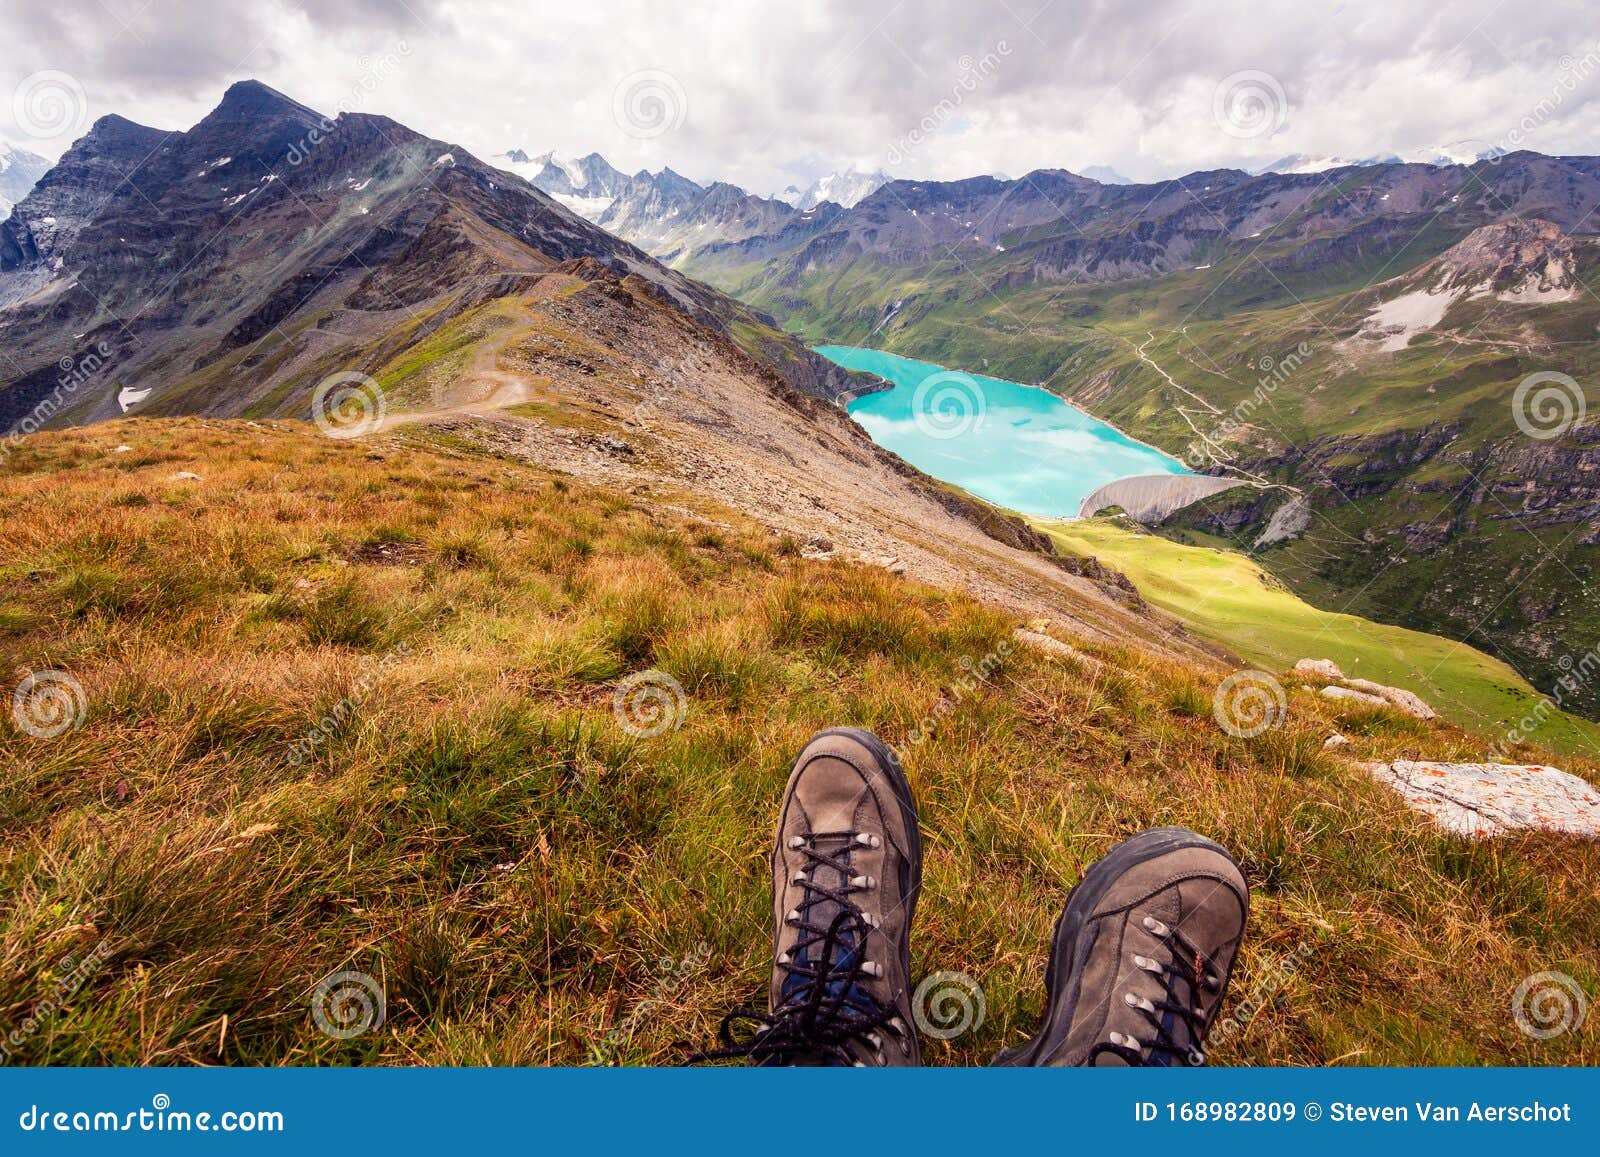 Botas De En La Cima De Una Montaña Imagen de archivo - Imagen de aventura, exterior: 168982809